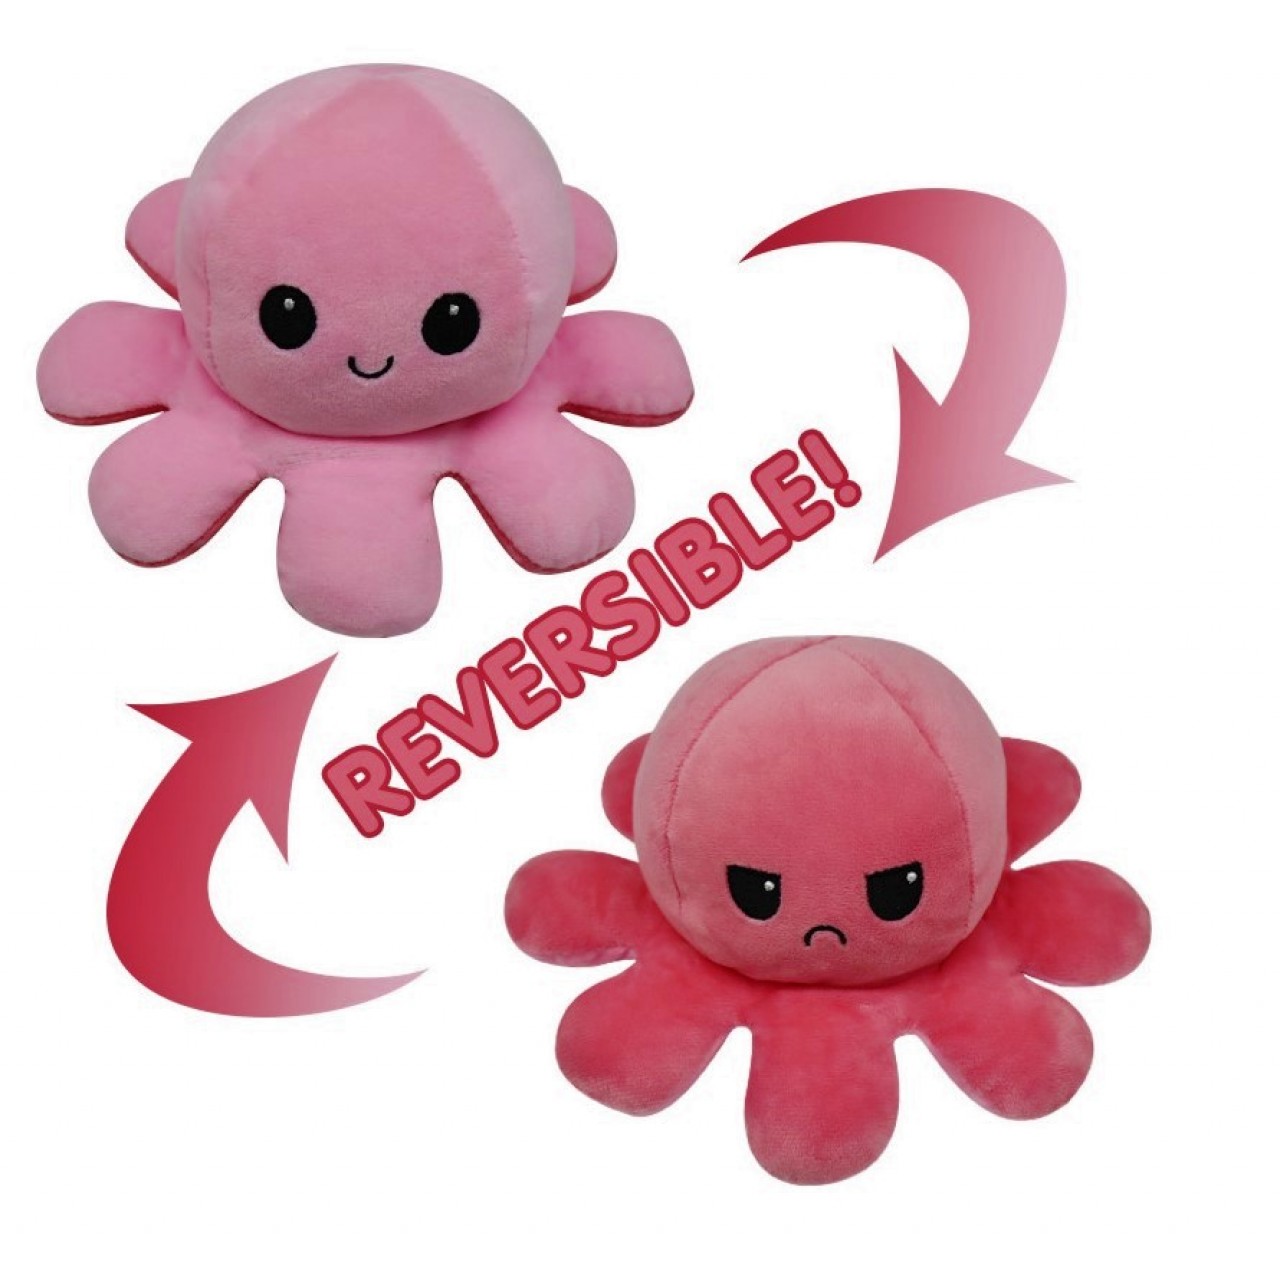 Χταπόδι διπλής όψης λούτρινο emotional reversible octopus plush 12 εκ - 5229 -  Ροζ / Ανοιχτό Ροζ